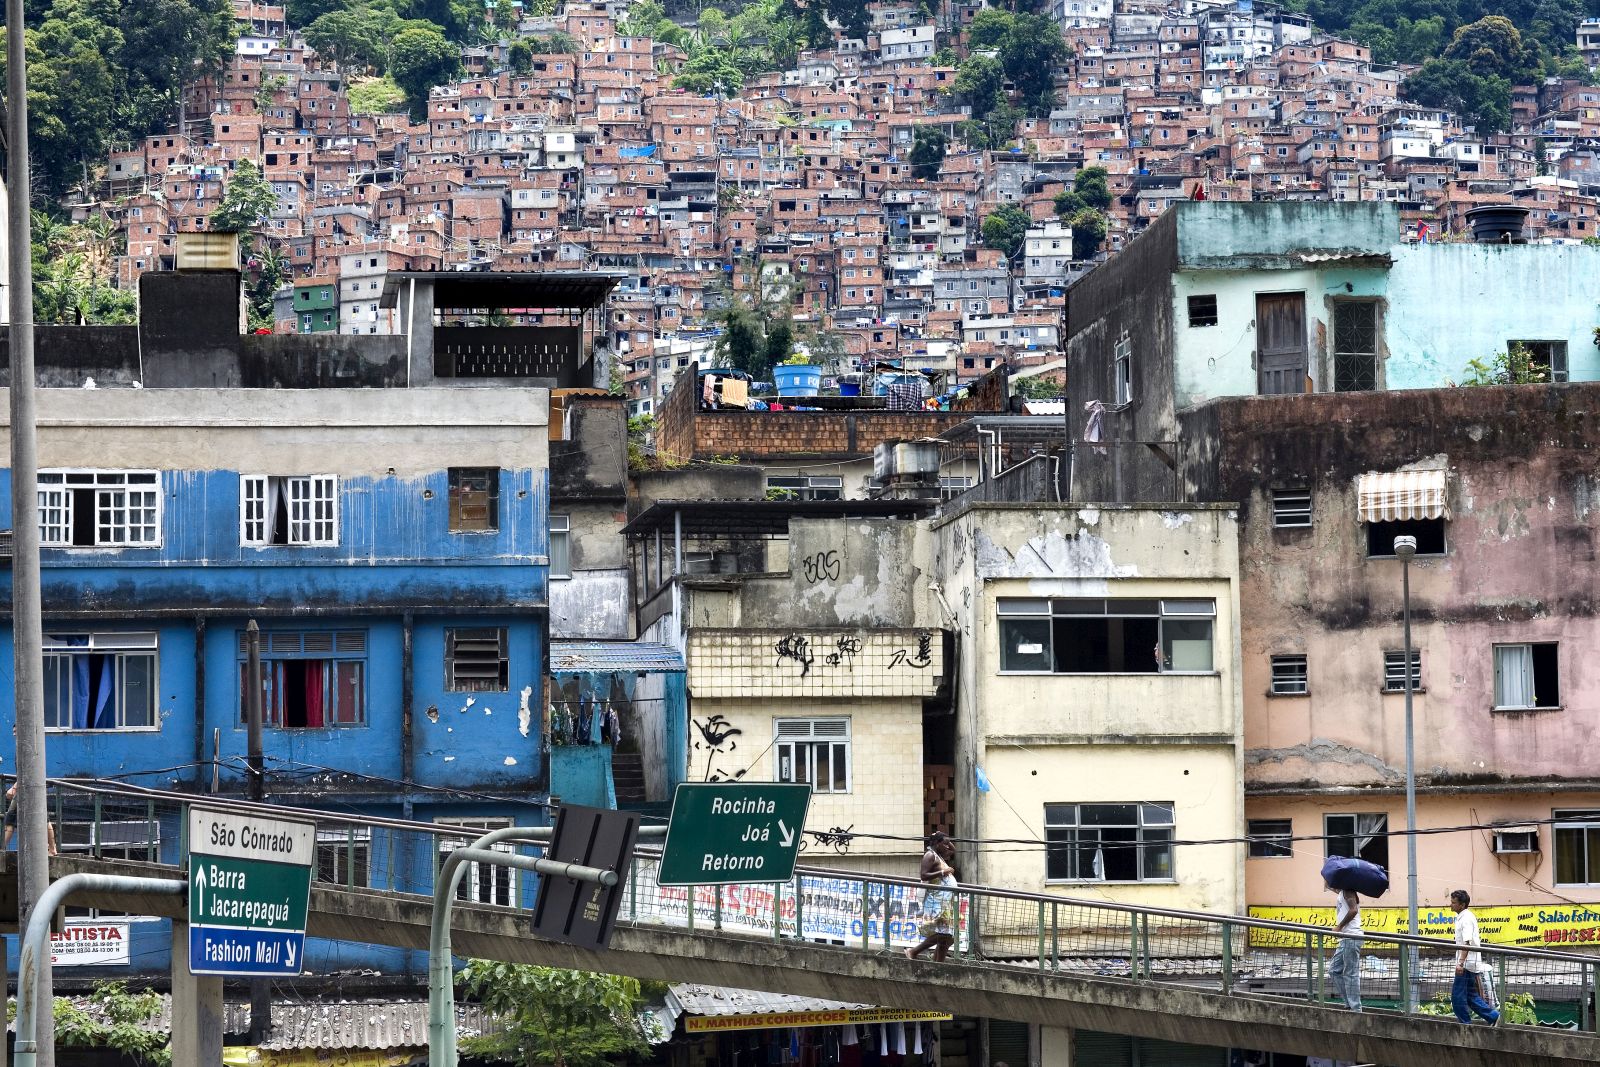 The favela Rocinha in Rio de Janeiro.